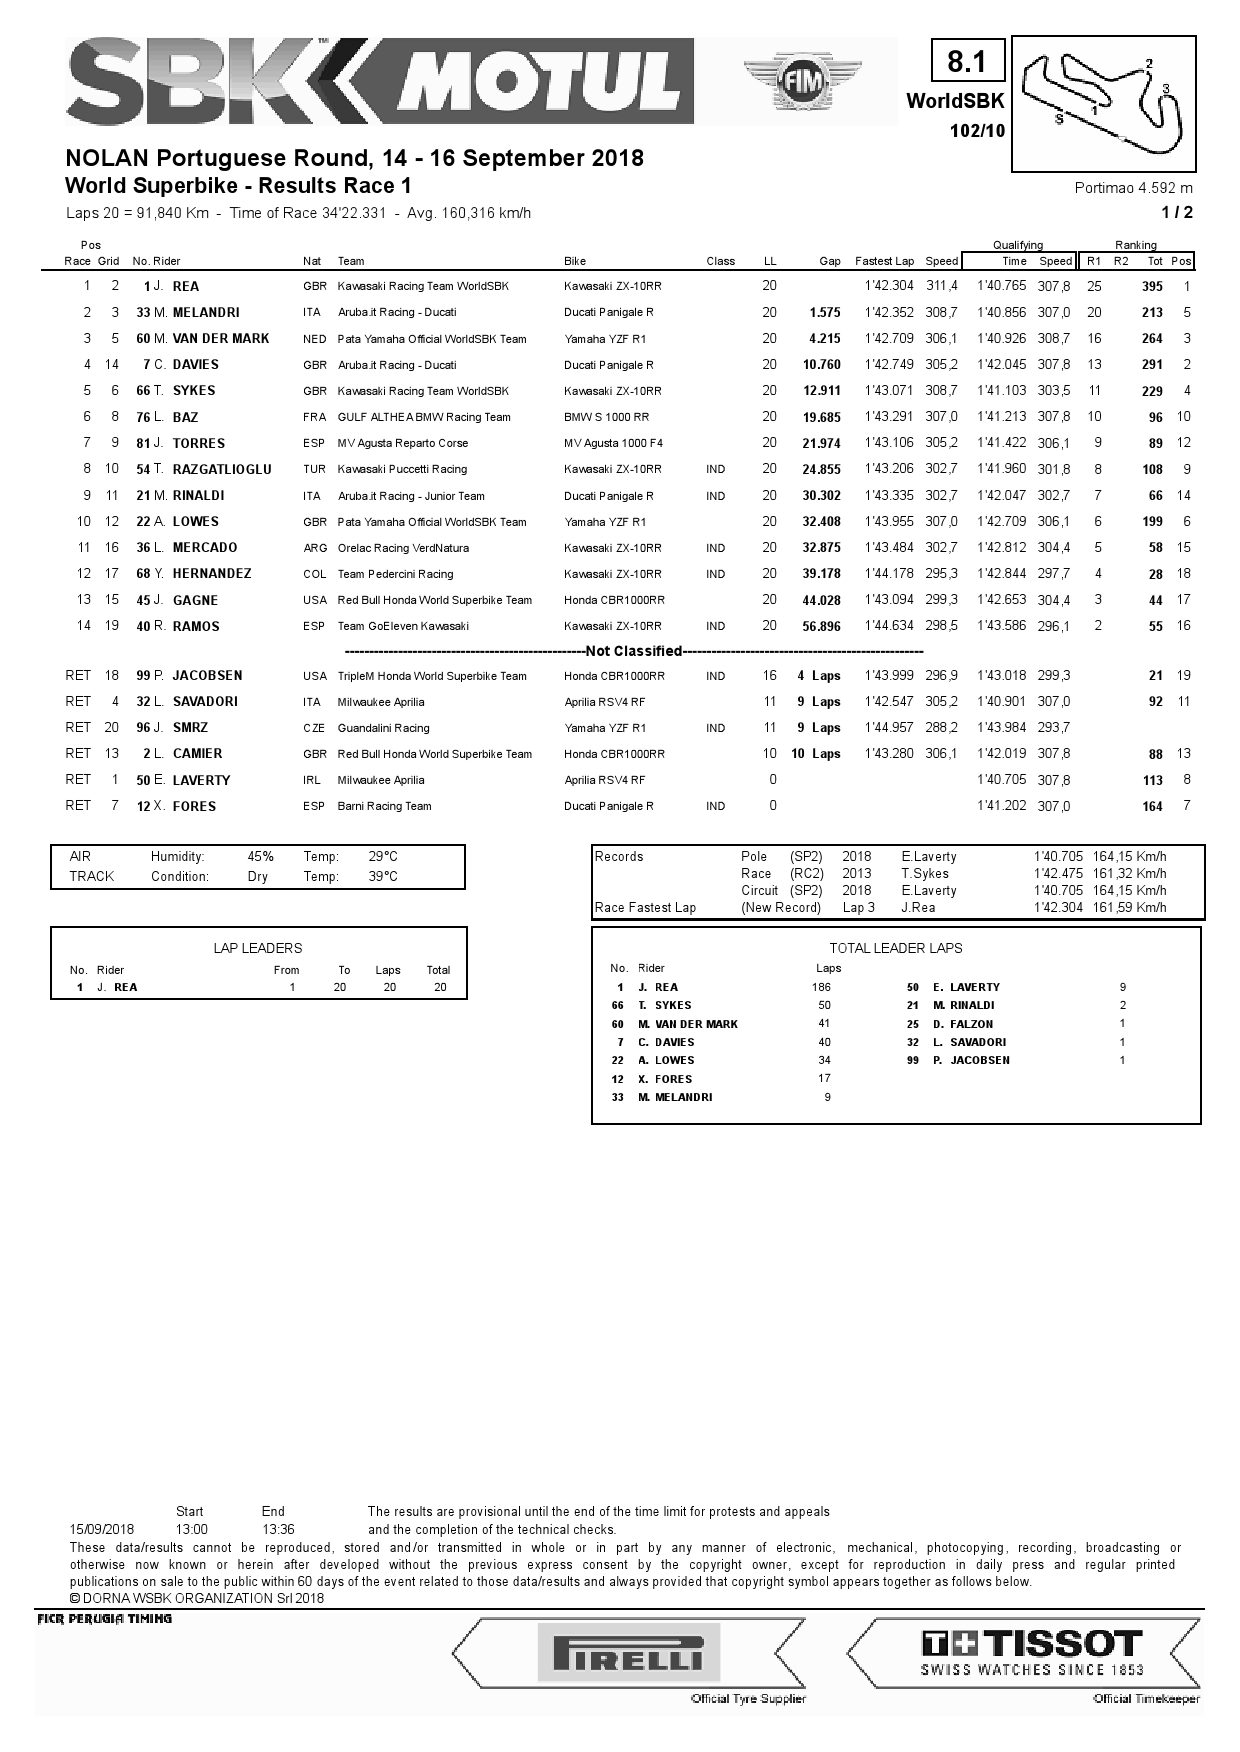 Результаты 1 гонки WSBK, Circuito do Algarve, 15.09.2018